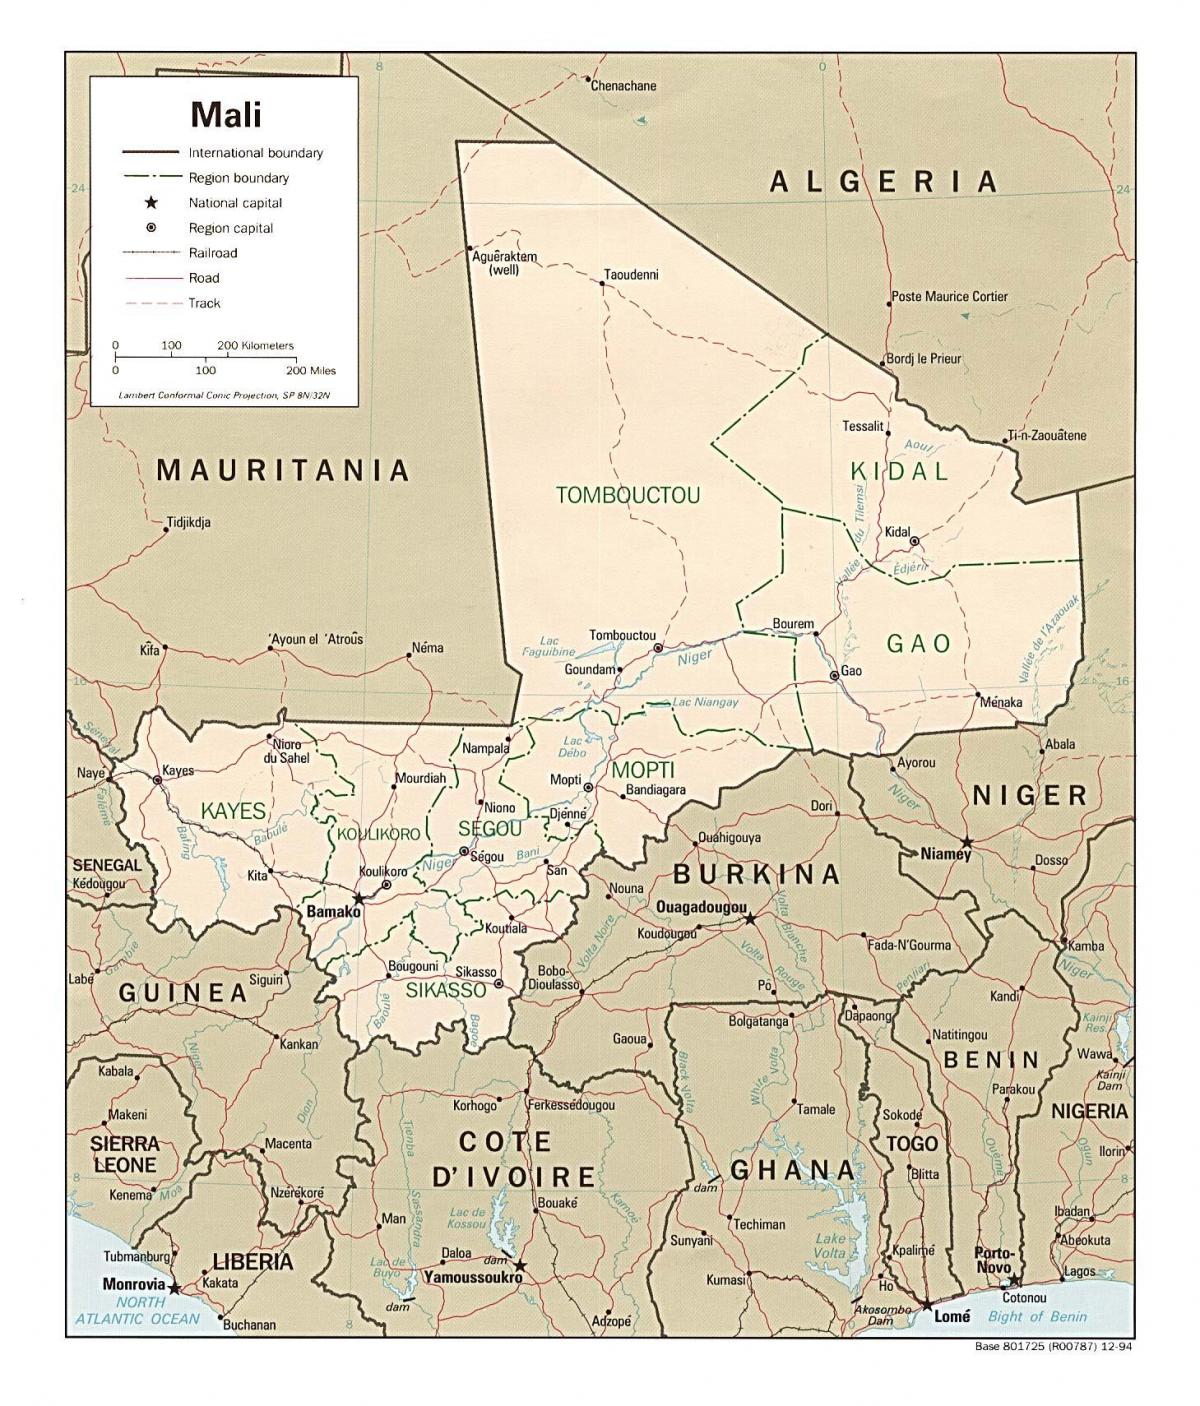 Peta Mali negara